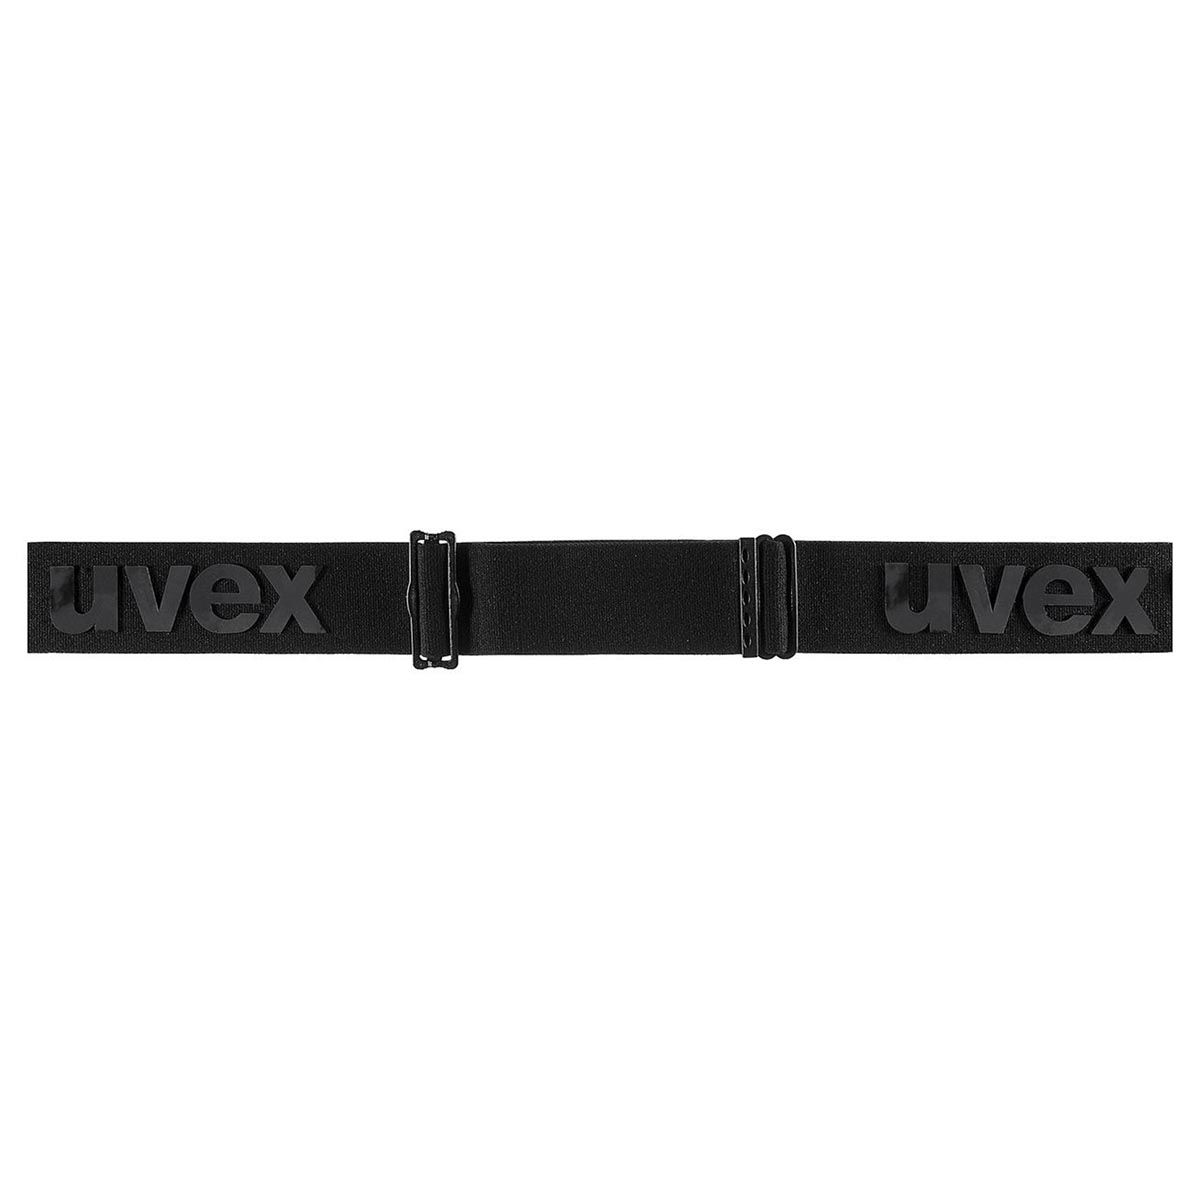 UVEX - DOWNHILL 2100 CV